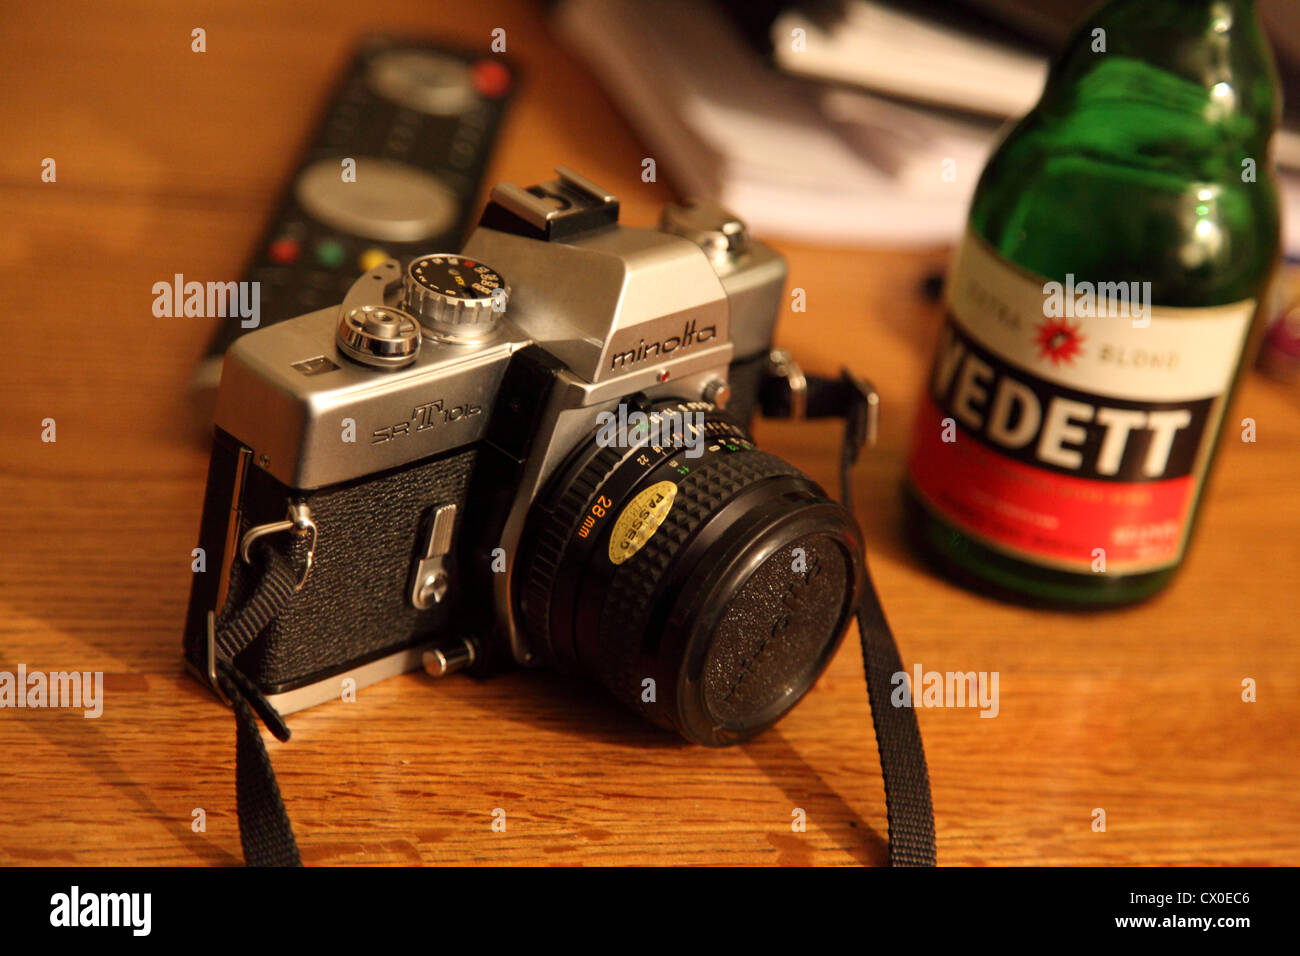 Konica Minolta SRT vintage fotocamera sul tavolo con bottiglia di birra Vedett Foto Stock